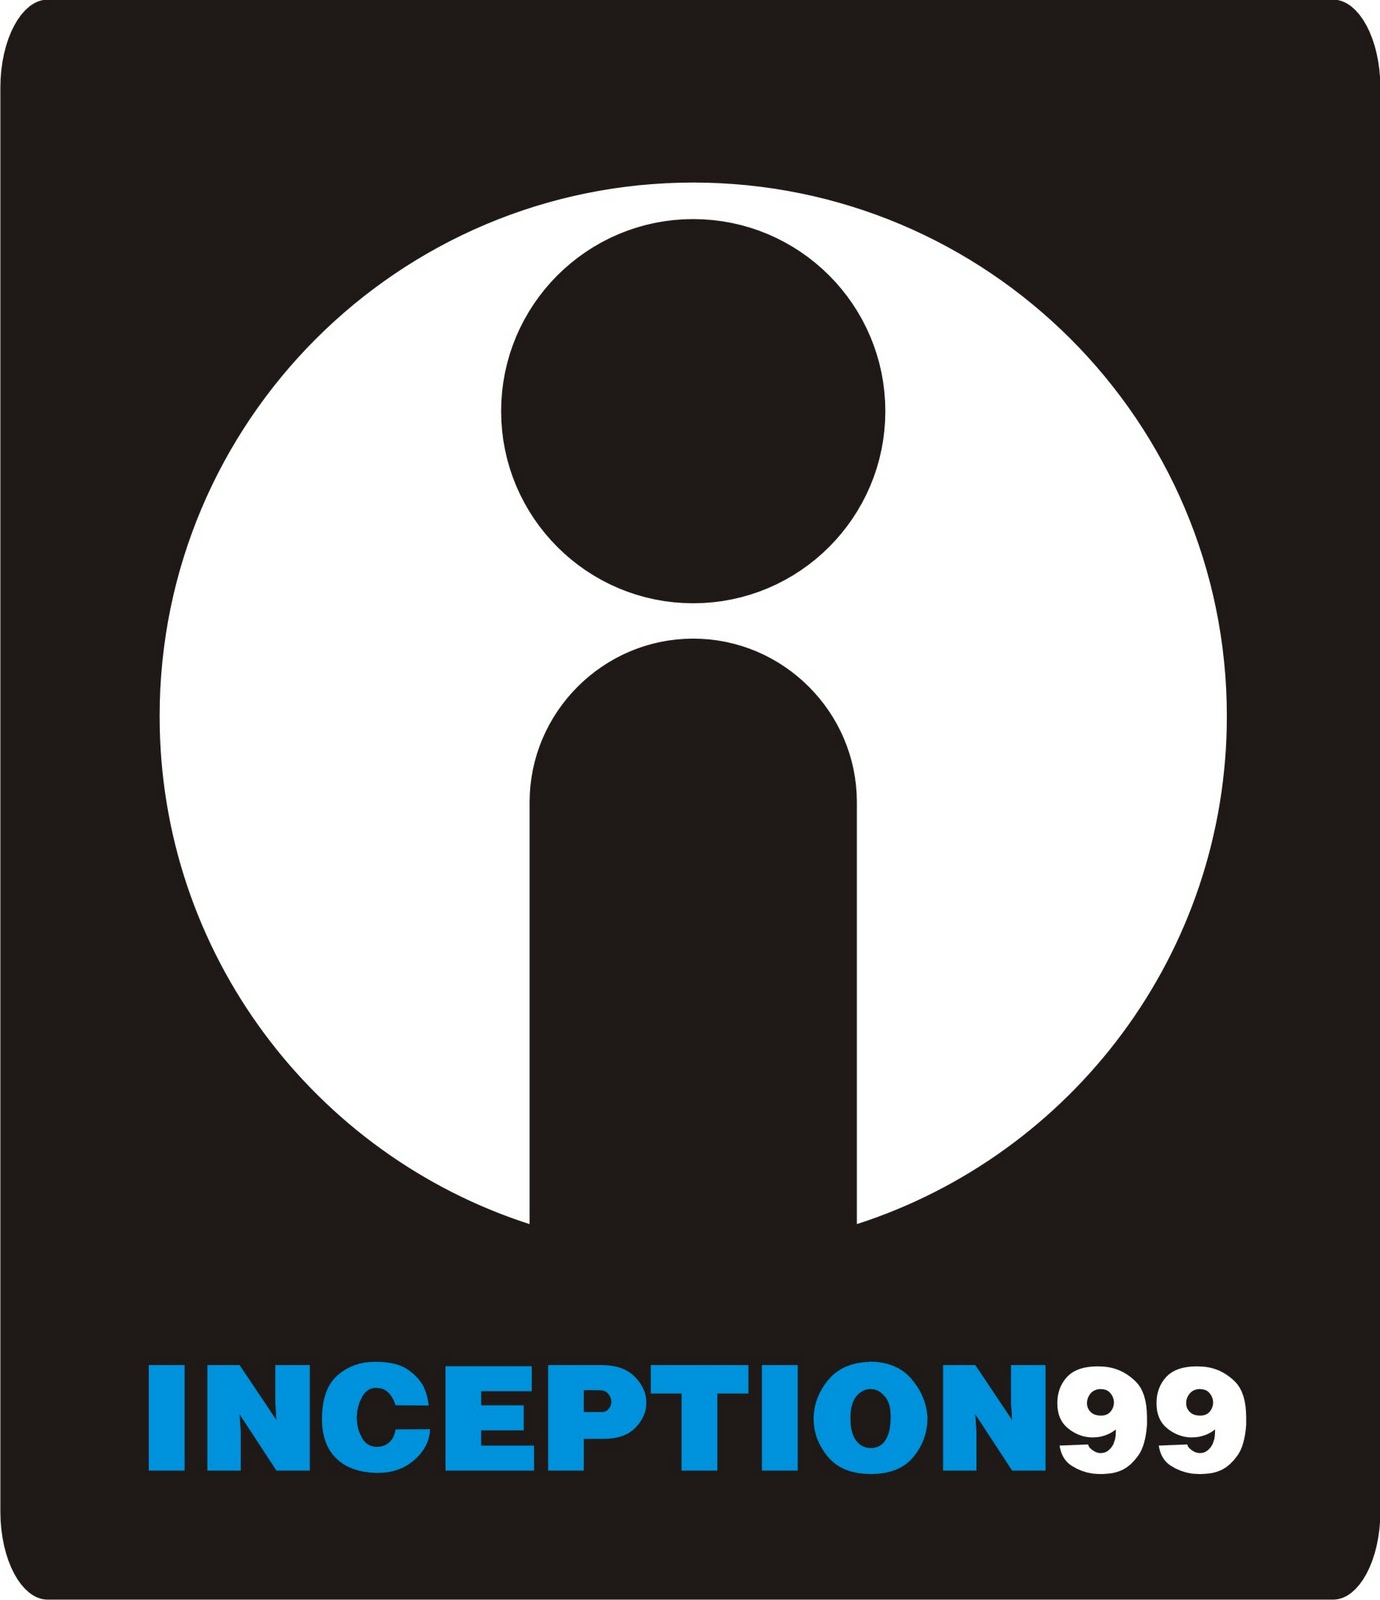 PT. Inception 99